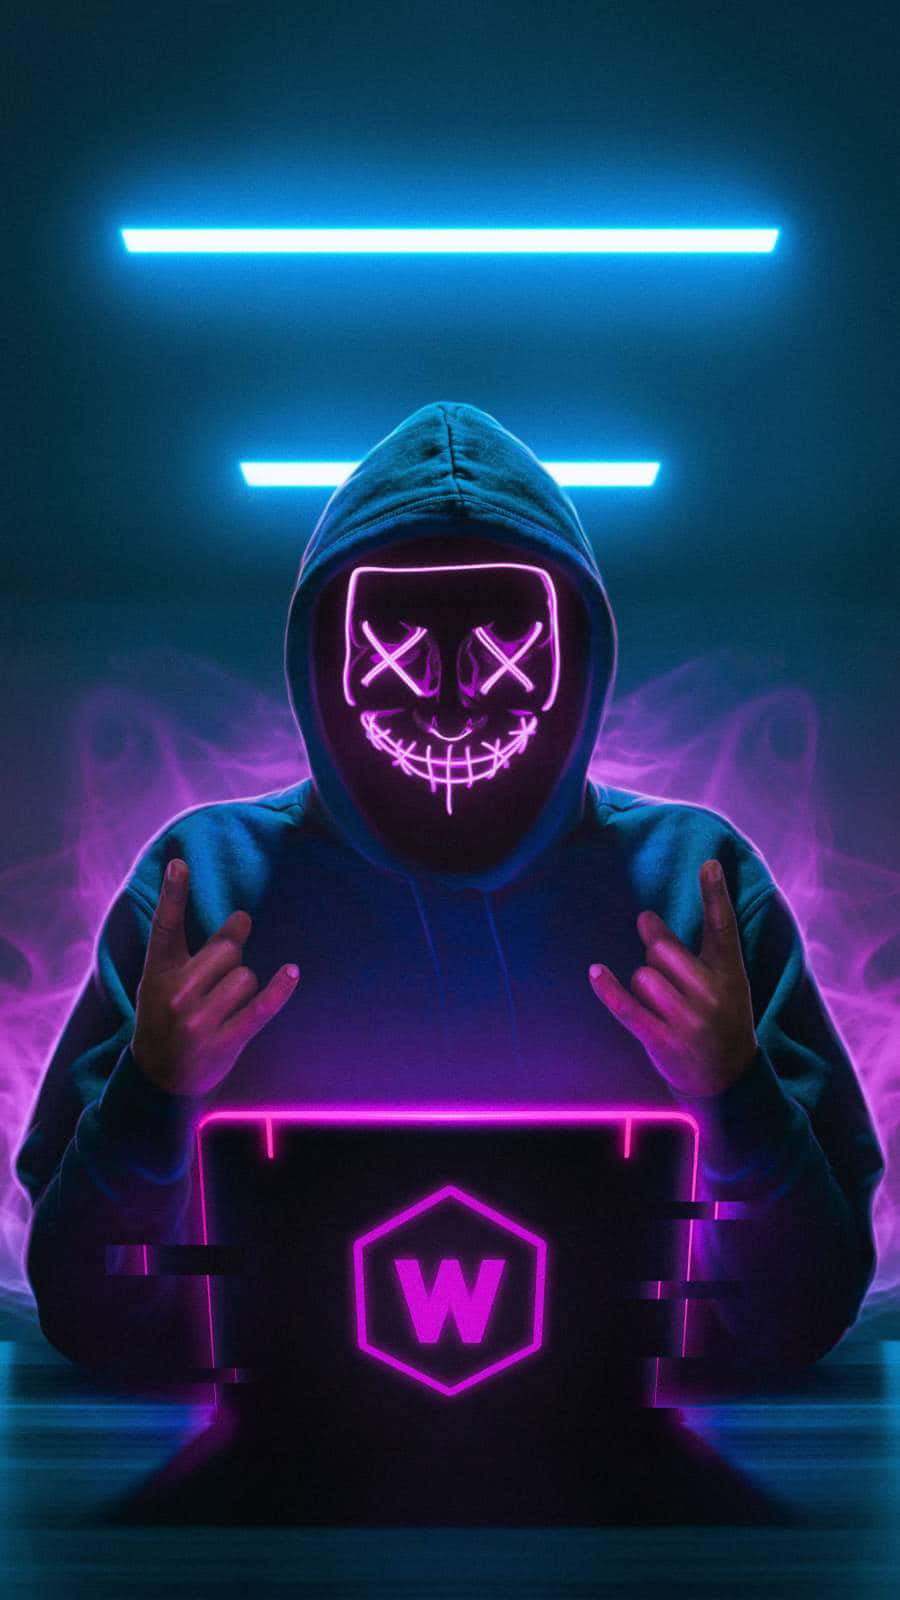 Cyberpunk Hacker Glowing Skull Hoodie Wallpaper